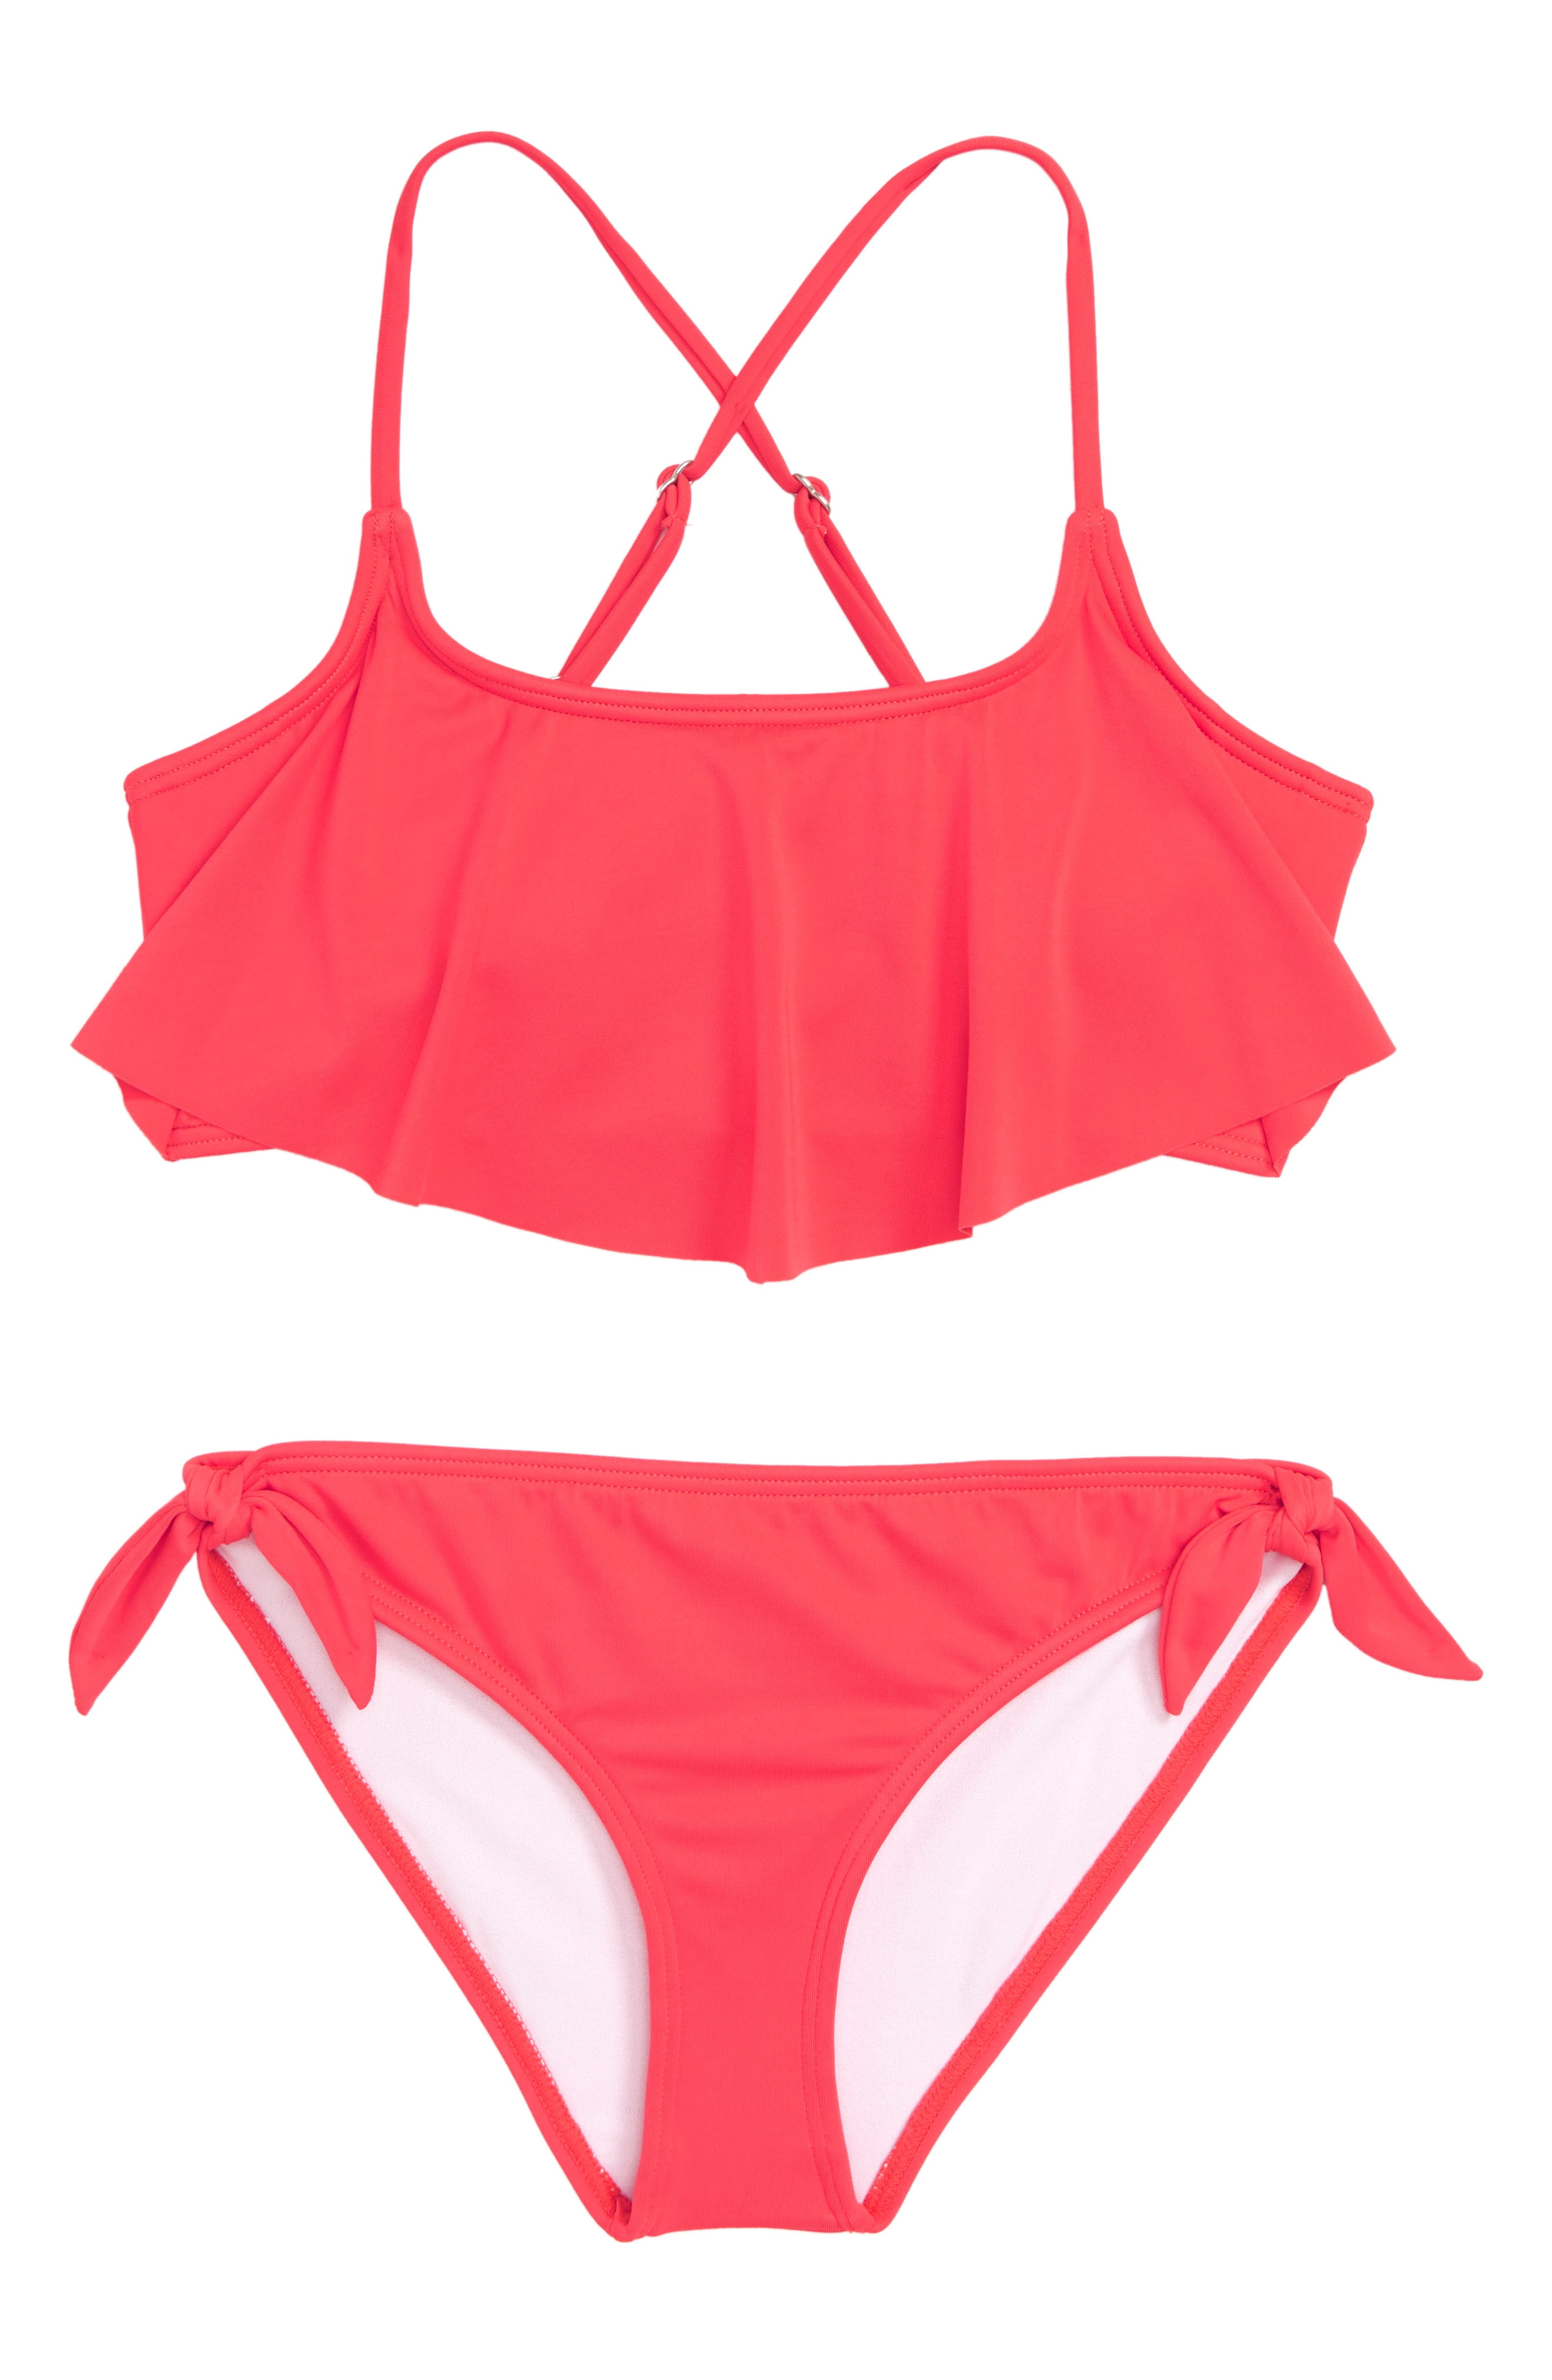 Billabong - Girls Deep Flutter Tankini Set Swimwear 14 - Walmart.com ...